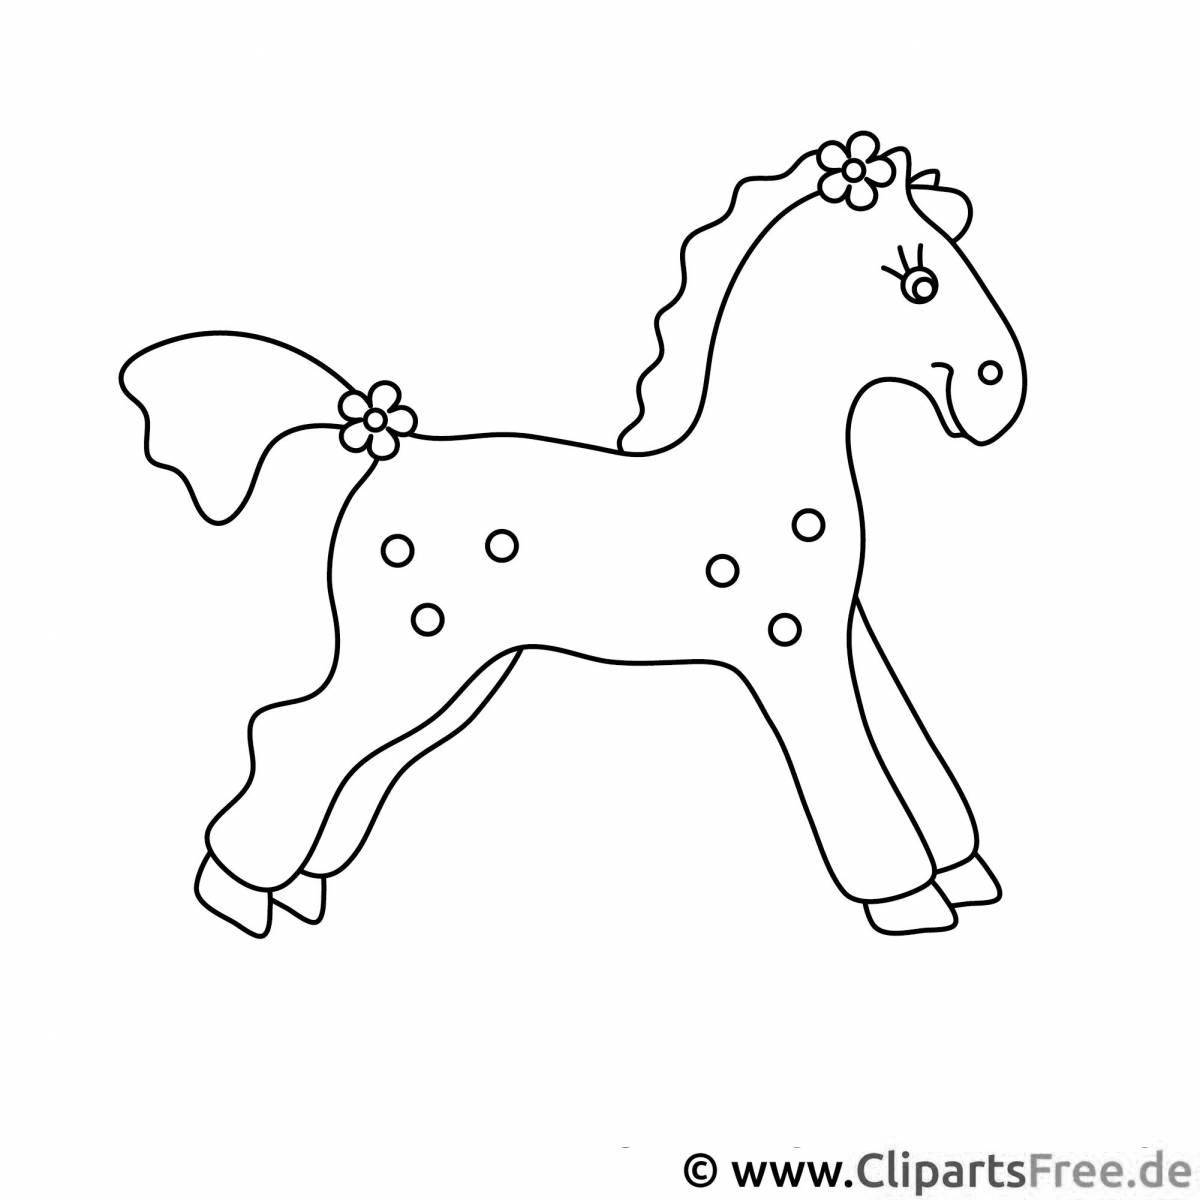 Удивительная дымковская лошадь раскраска для детей